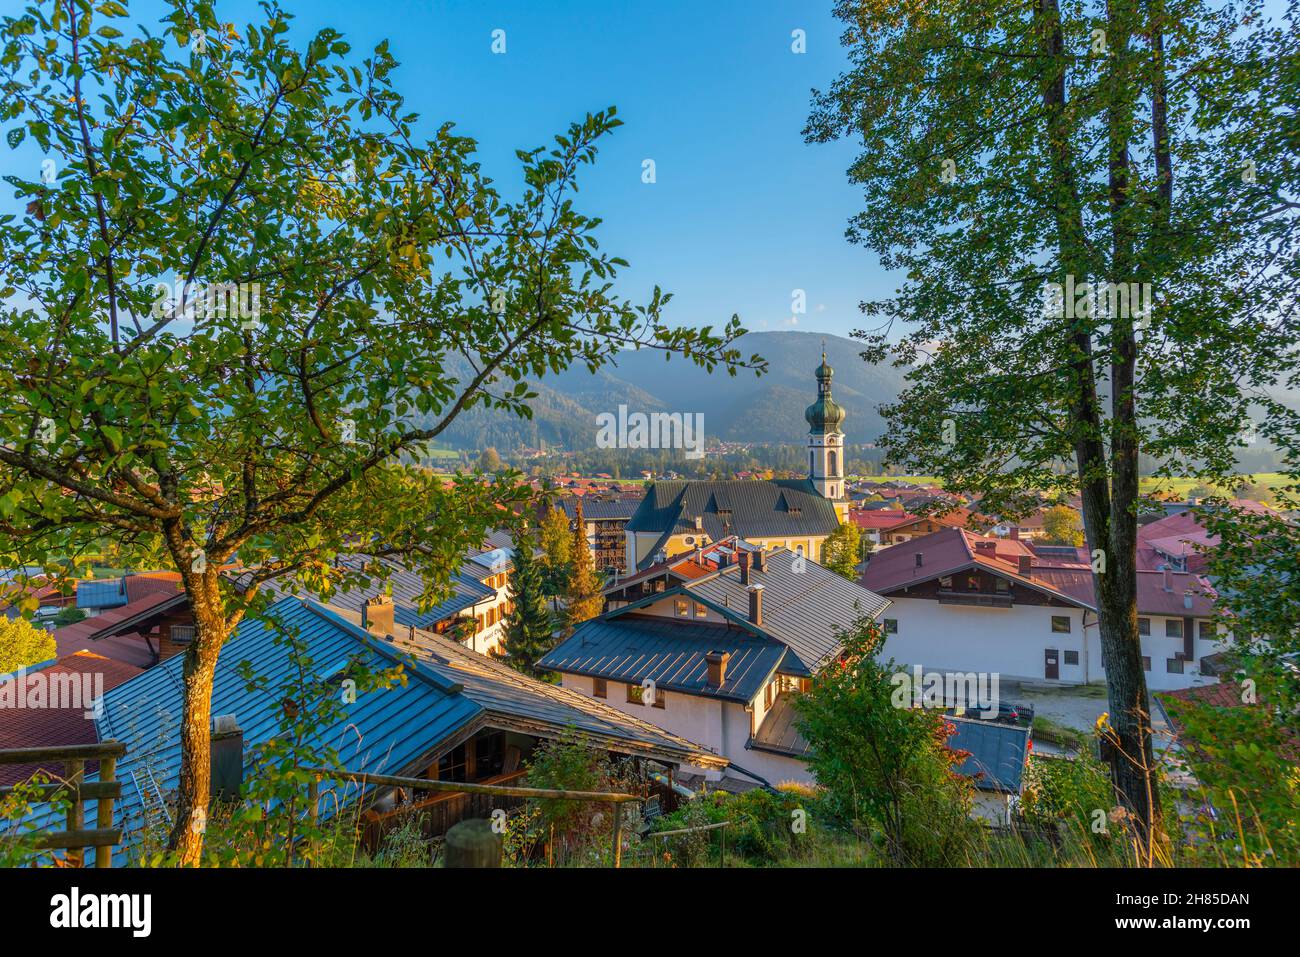 Blick über das beliebte und touristische Luftkurdorf Reit im Winkl, Region Chiemgau, Oberbayern, Süddeutschland, Europa Stockfoto